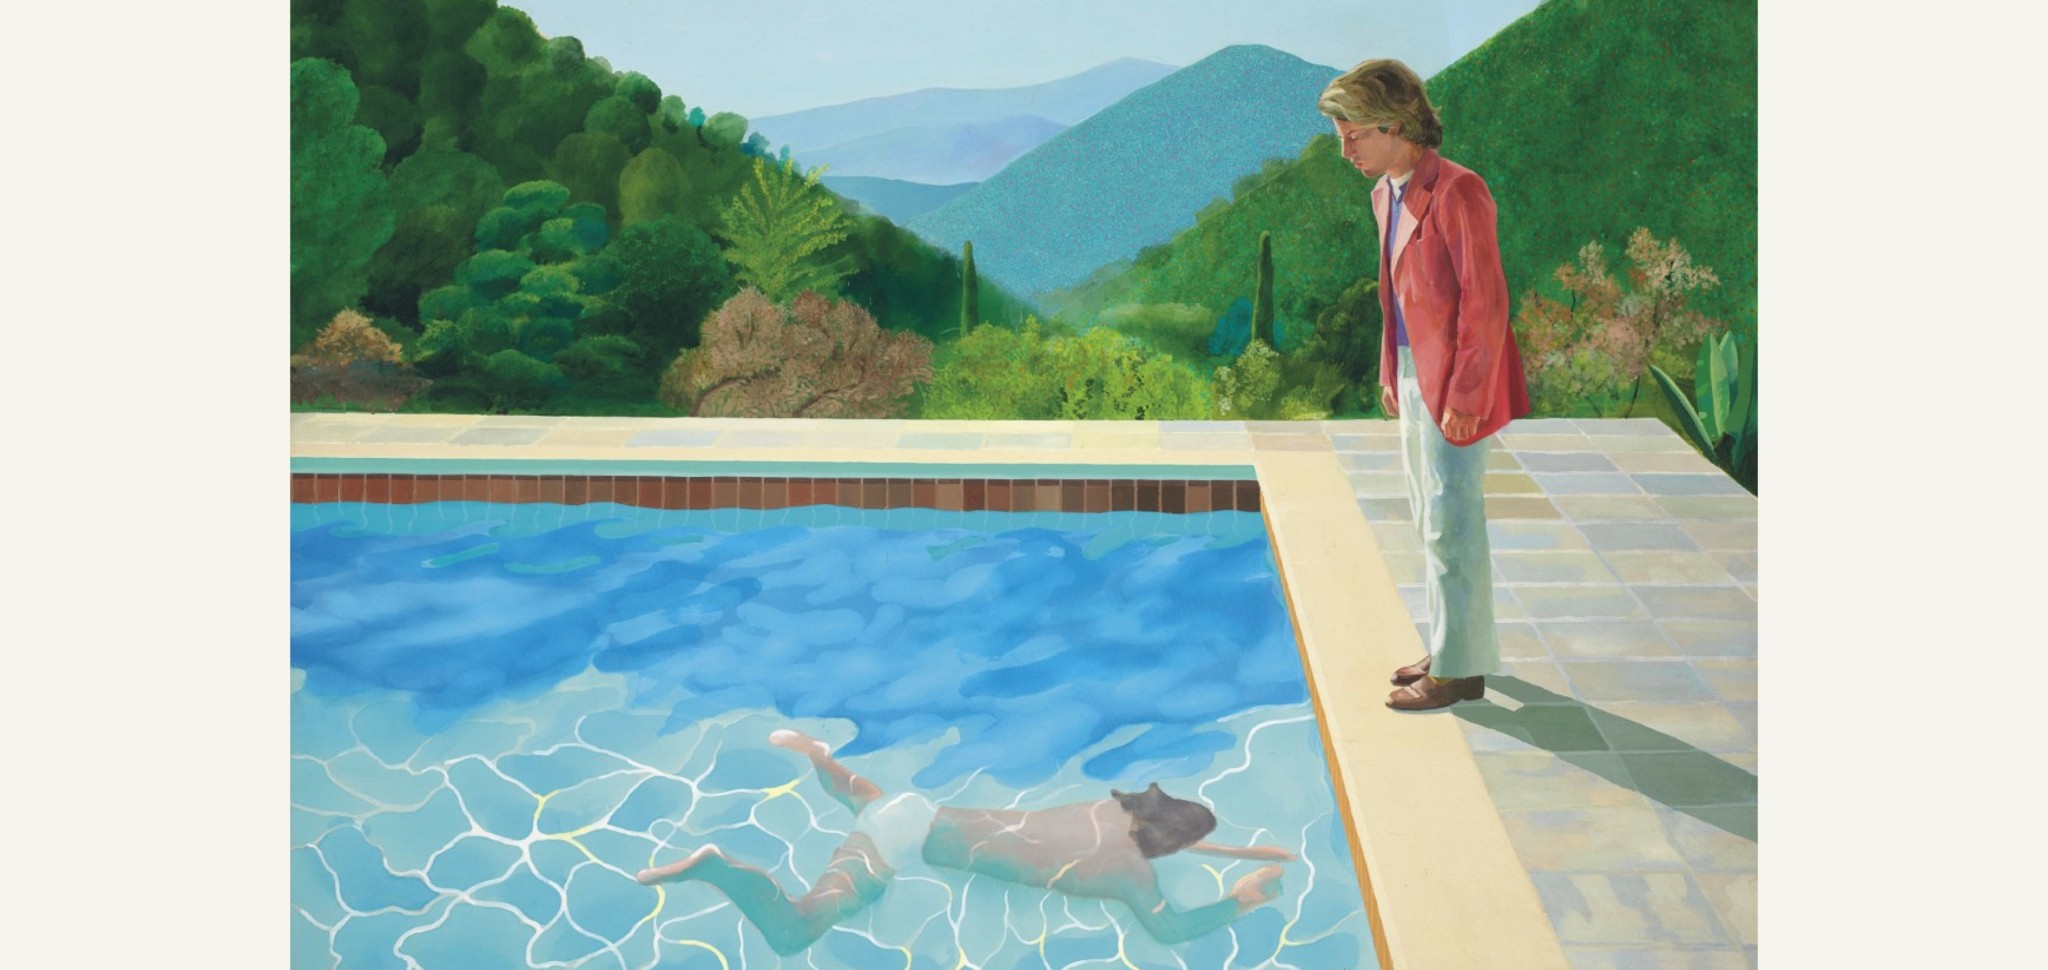 Γιατί είναι σπουδαίος ο πίνακας Portrait of an Artist (Pool with Two Figures) του Ντέιβιντ Χόκνεϊ των 90,3 εκατ. δολαρίων